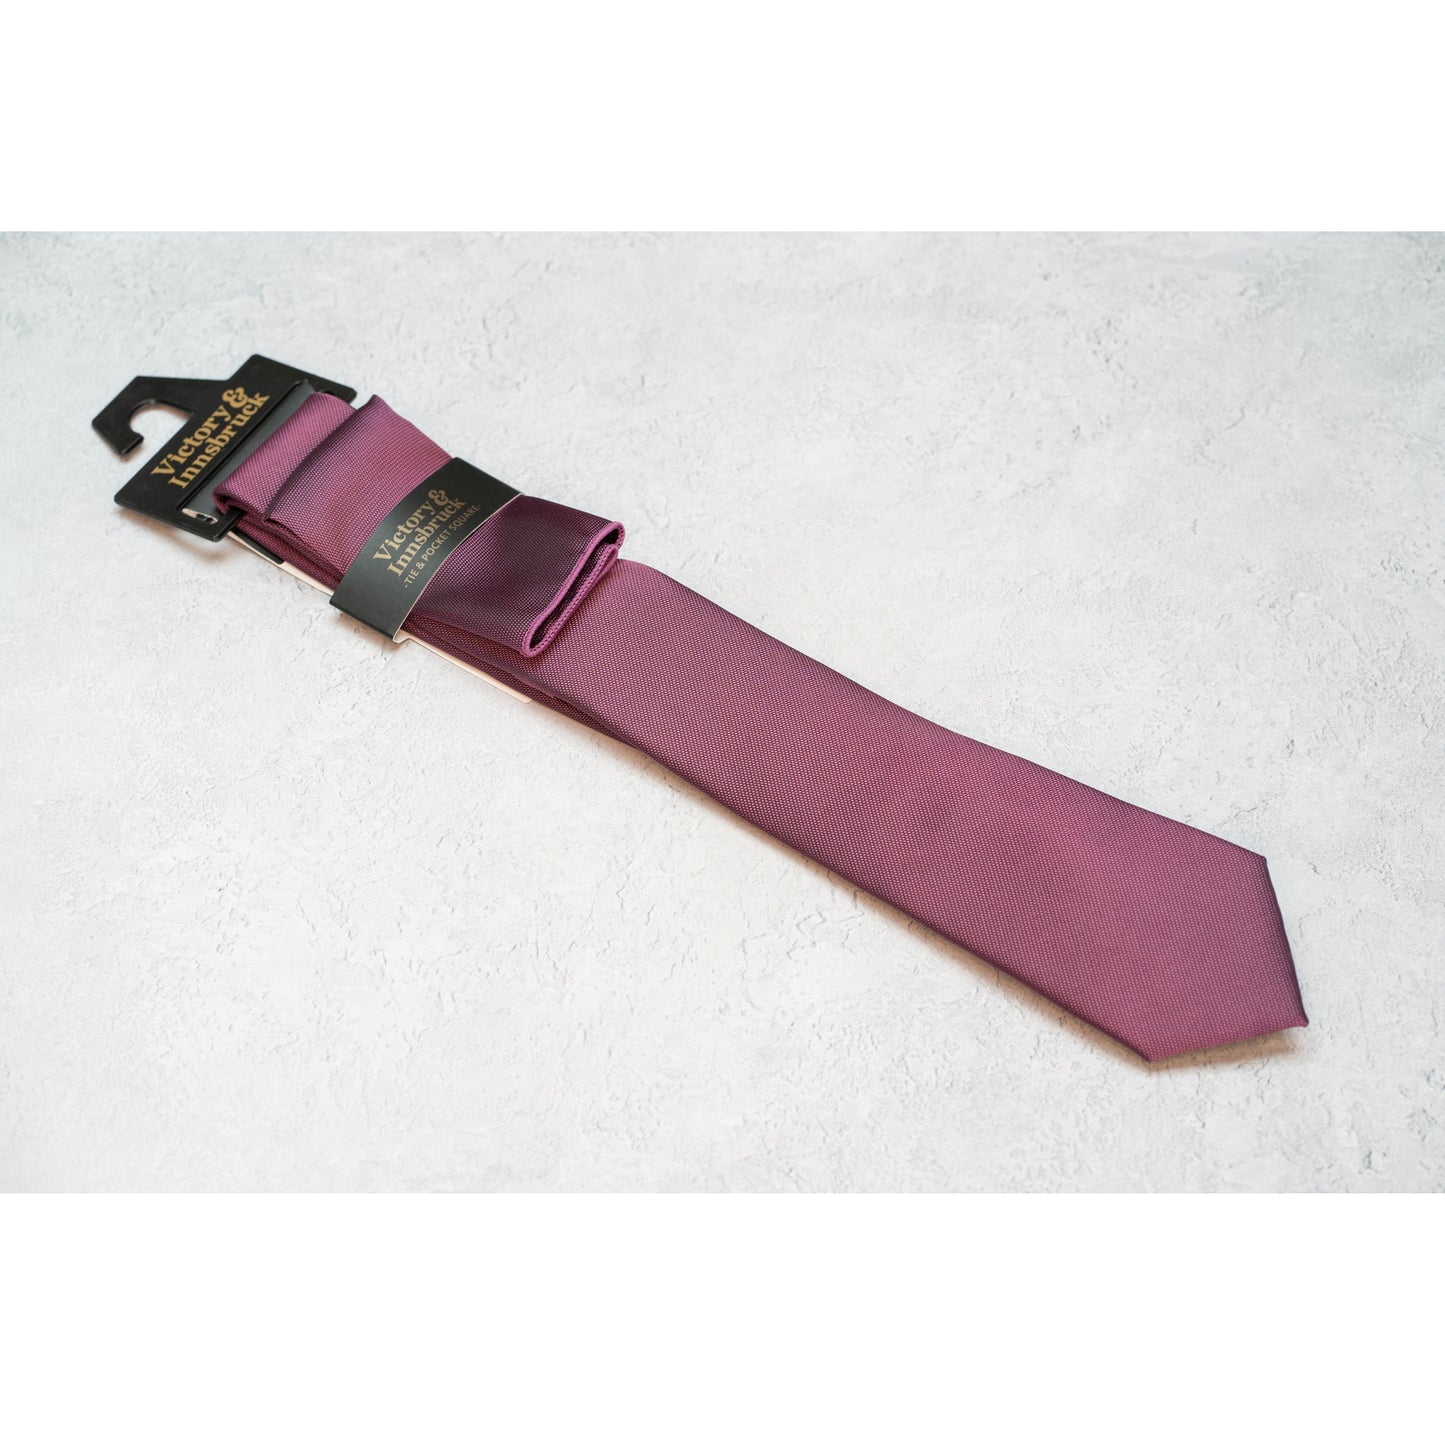 Dark Purple Textured Tie Set